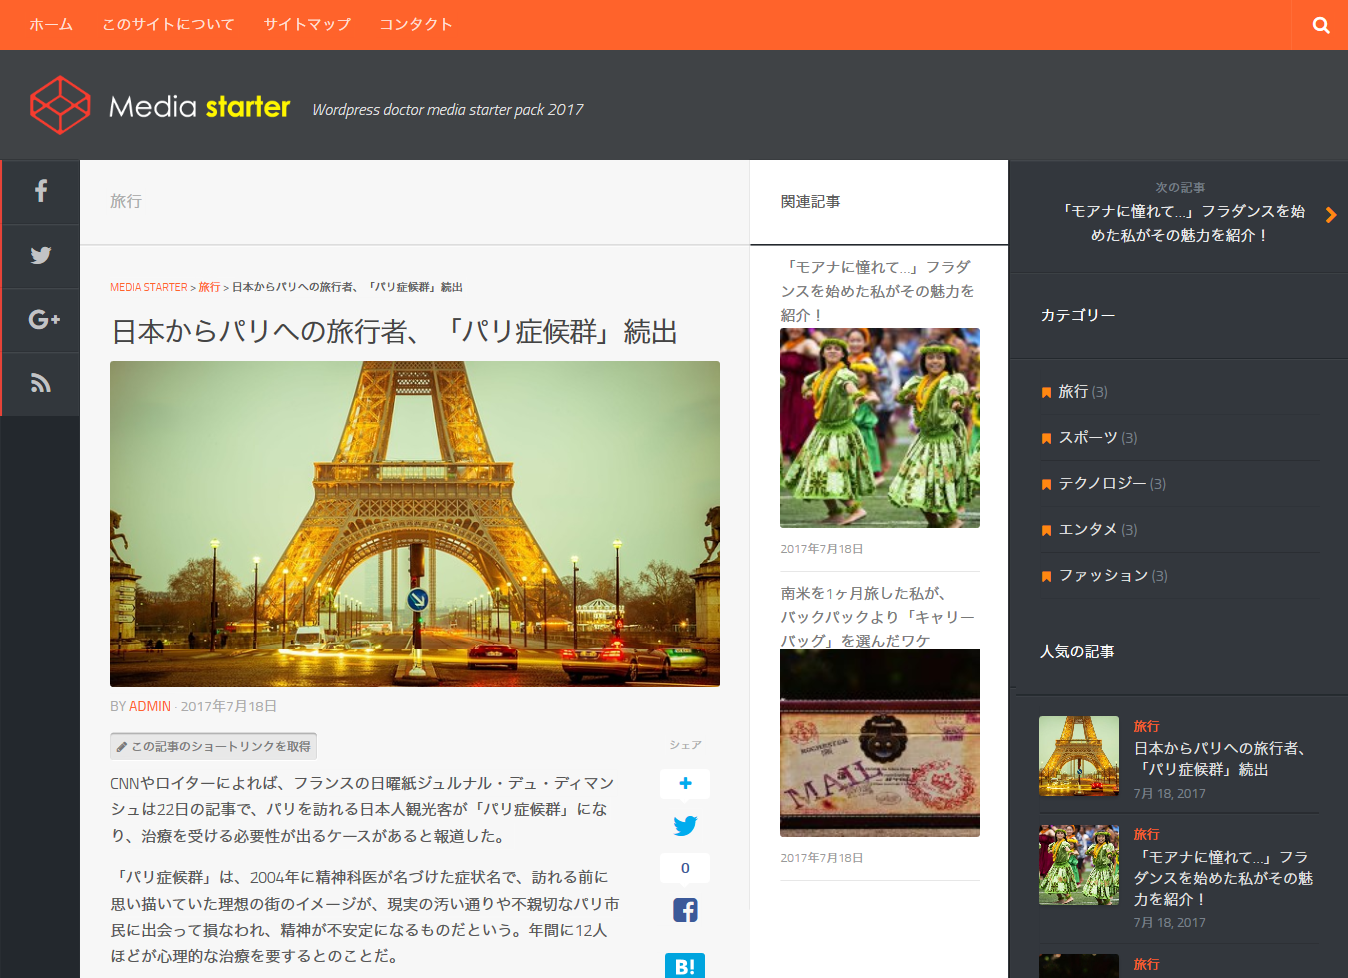 日本からパリへの旅行者、「パリ症候群」続出   MEDIA STARTER